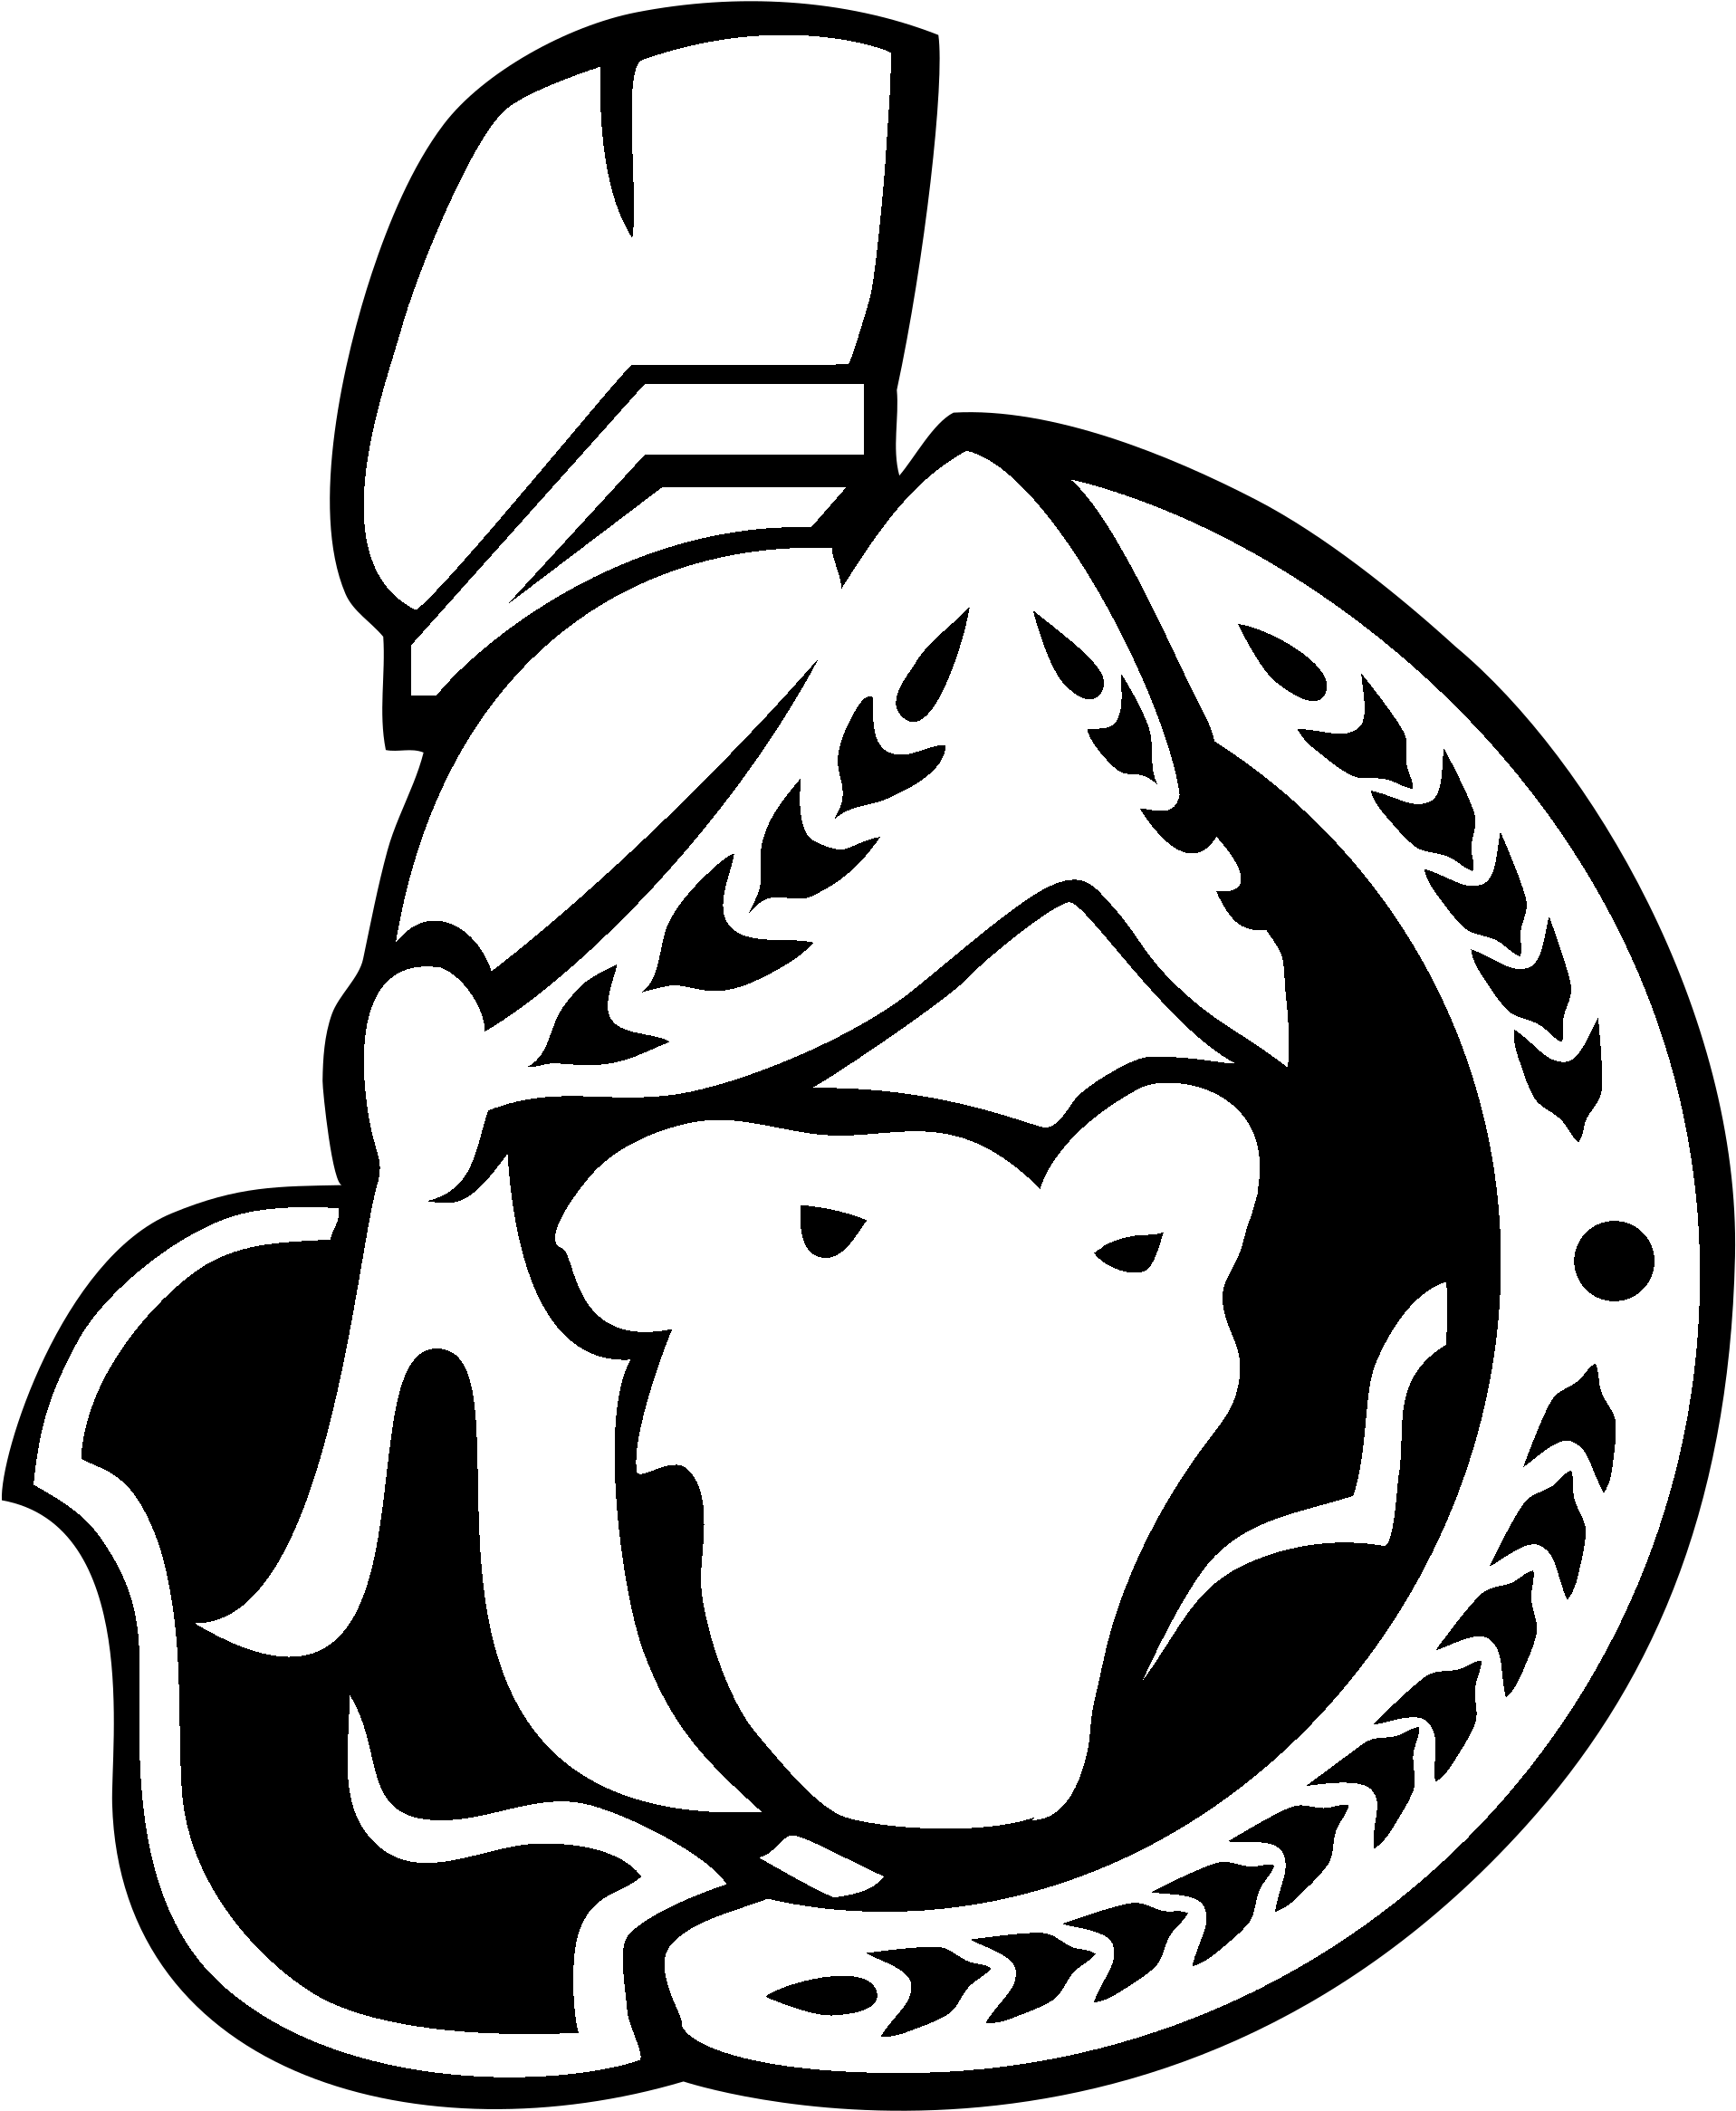 Ottawa Senators Logo Black And White - Ottawa Senators Logo 2006 (2400x2400), Png Download